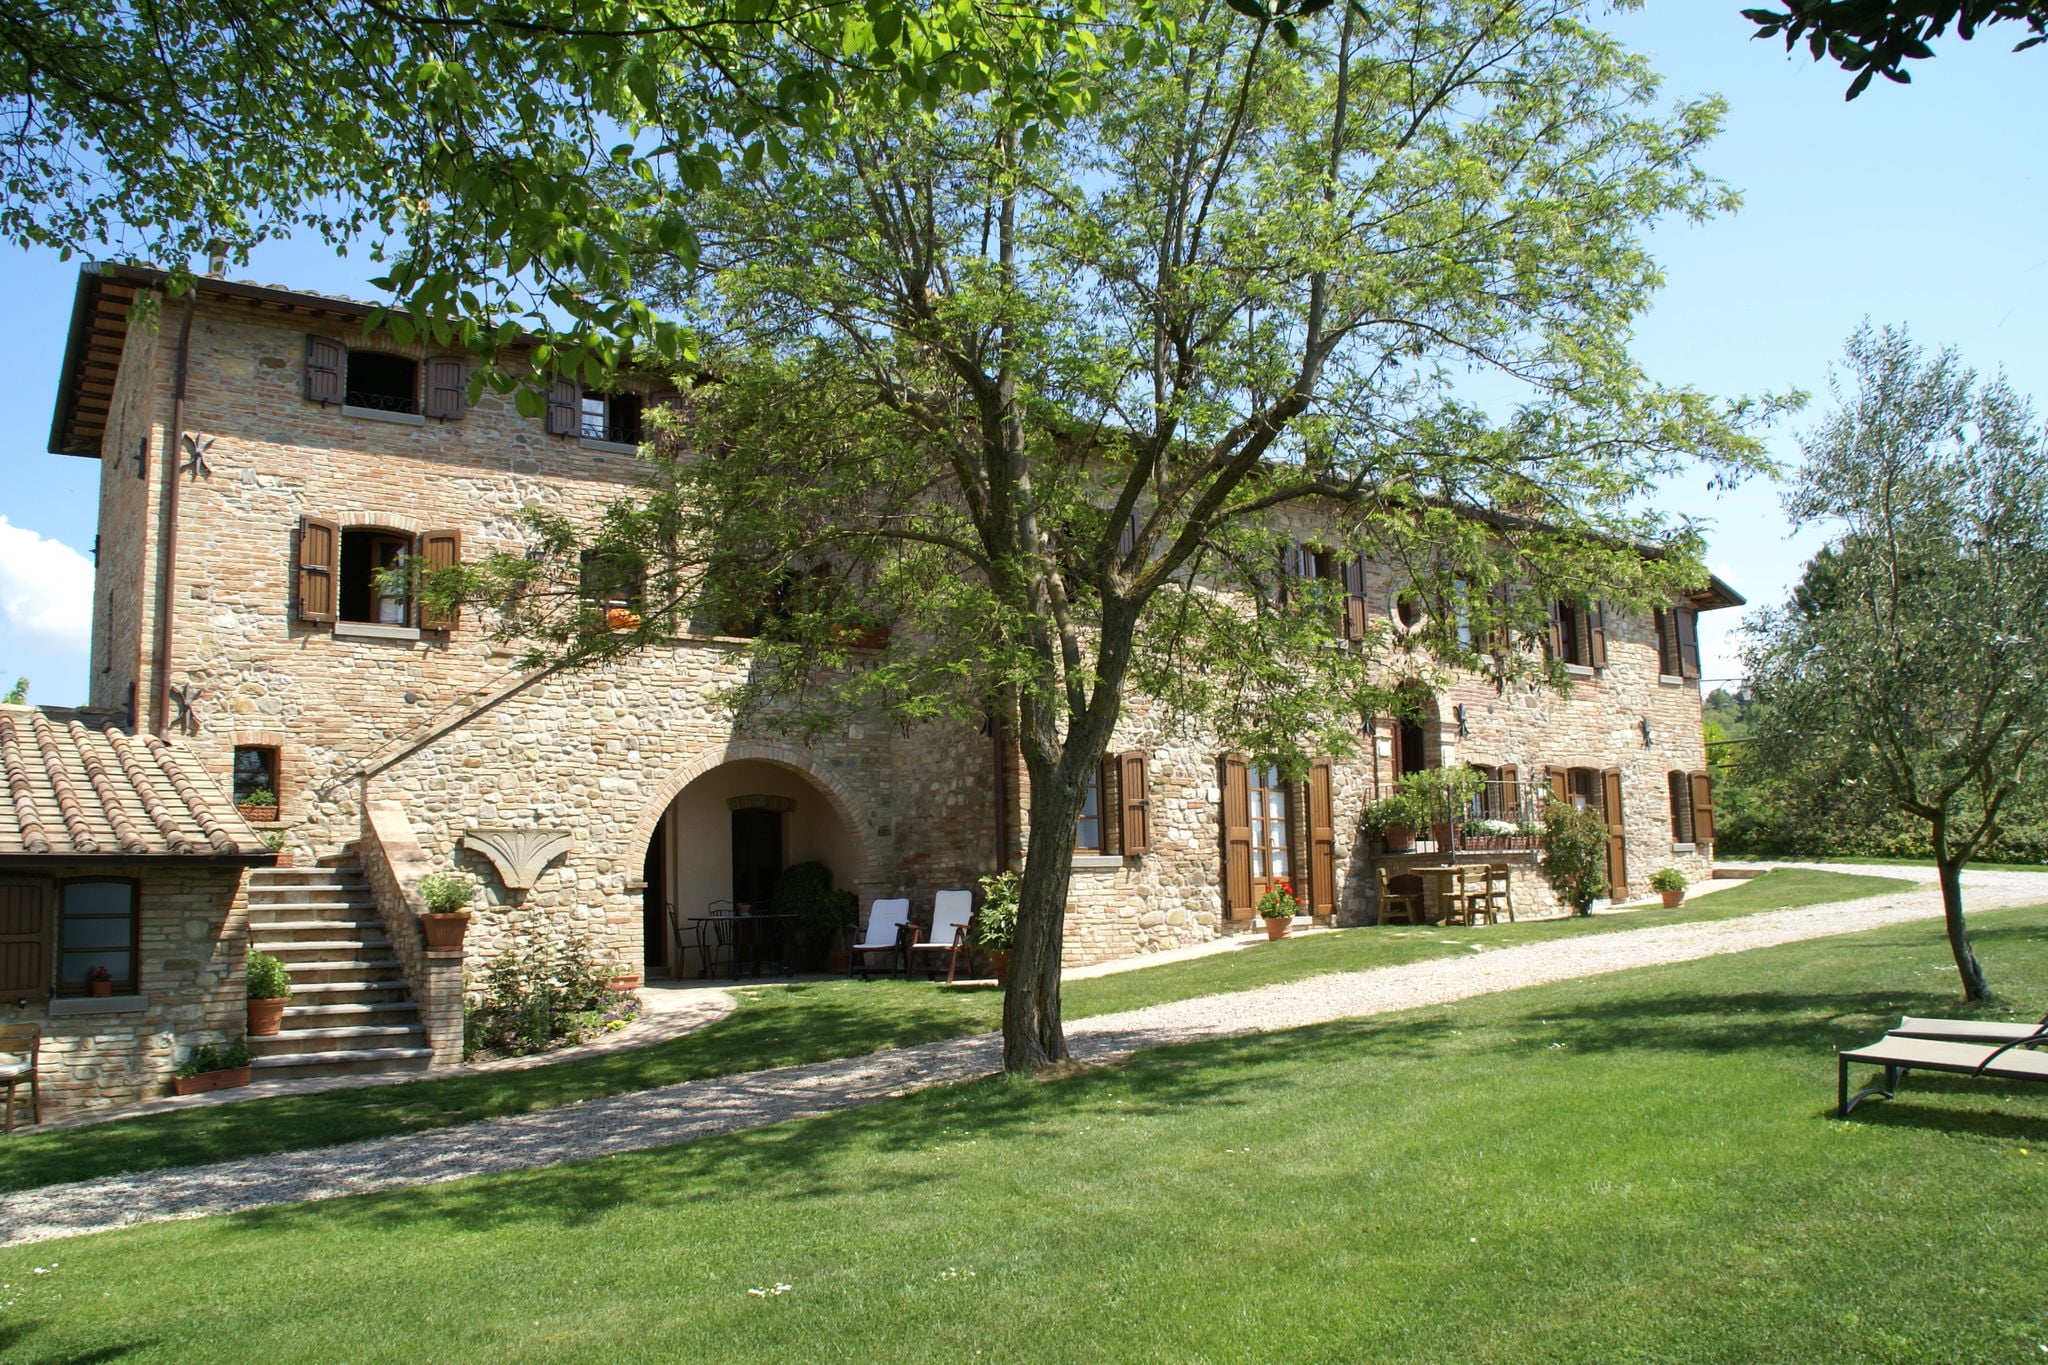 Freistehendes Cottage auf den Hügeln in Montone Umbria